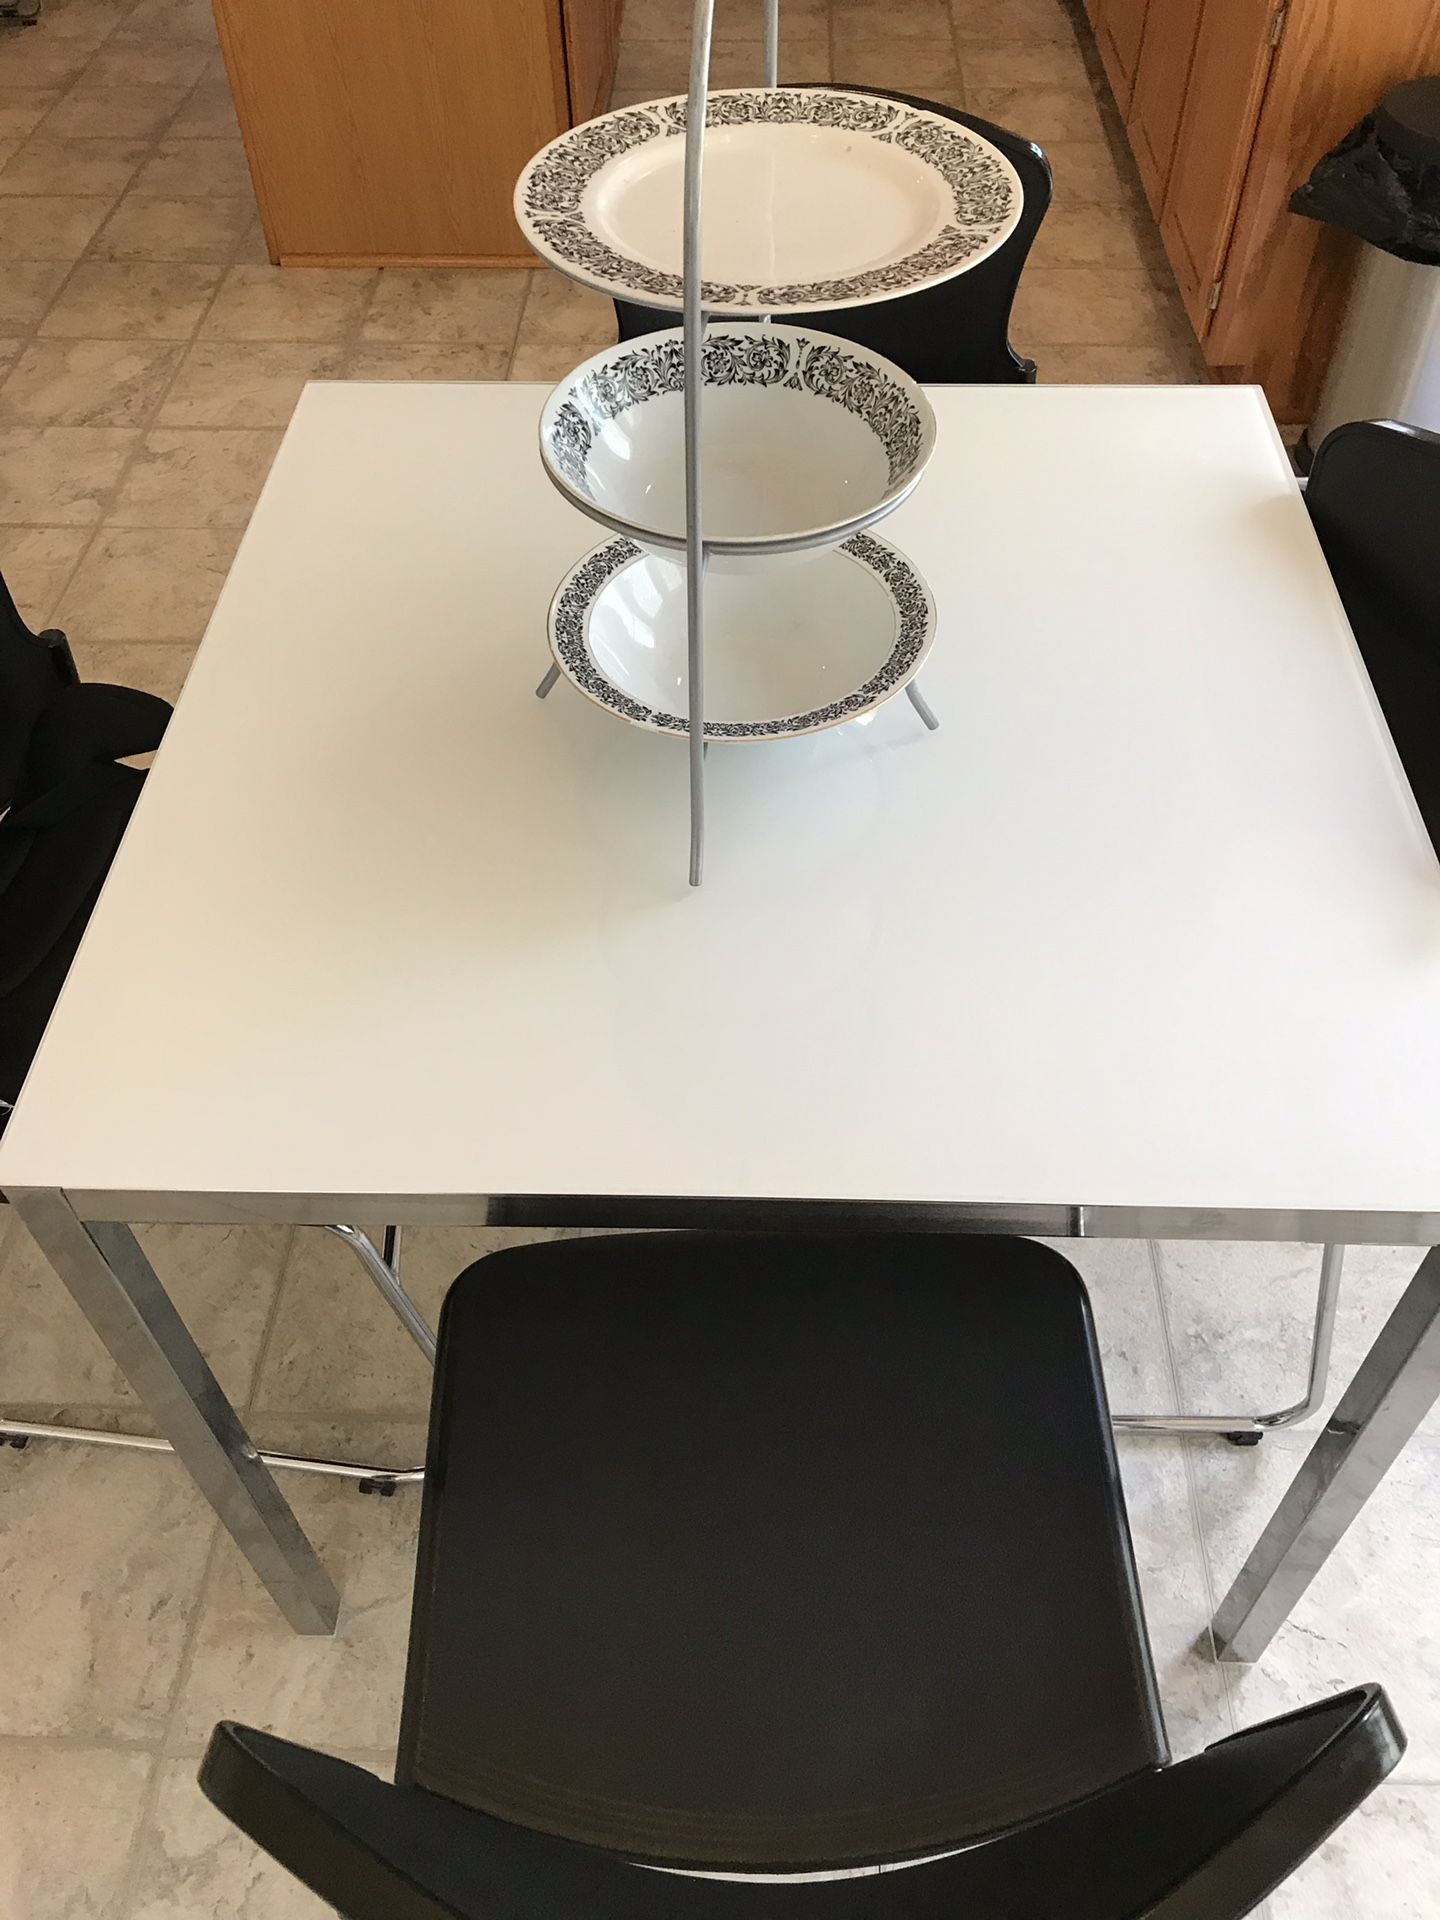 IKEA kitchen table